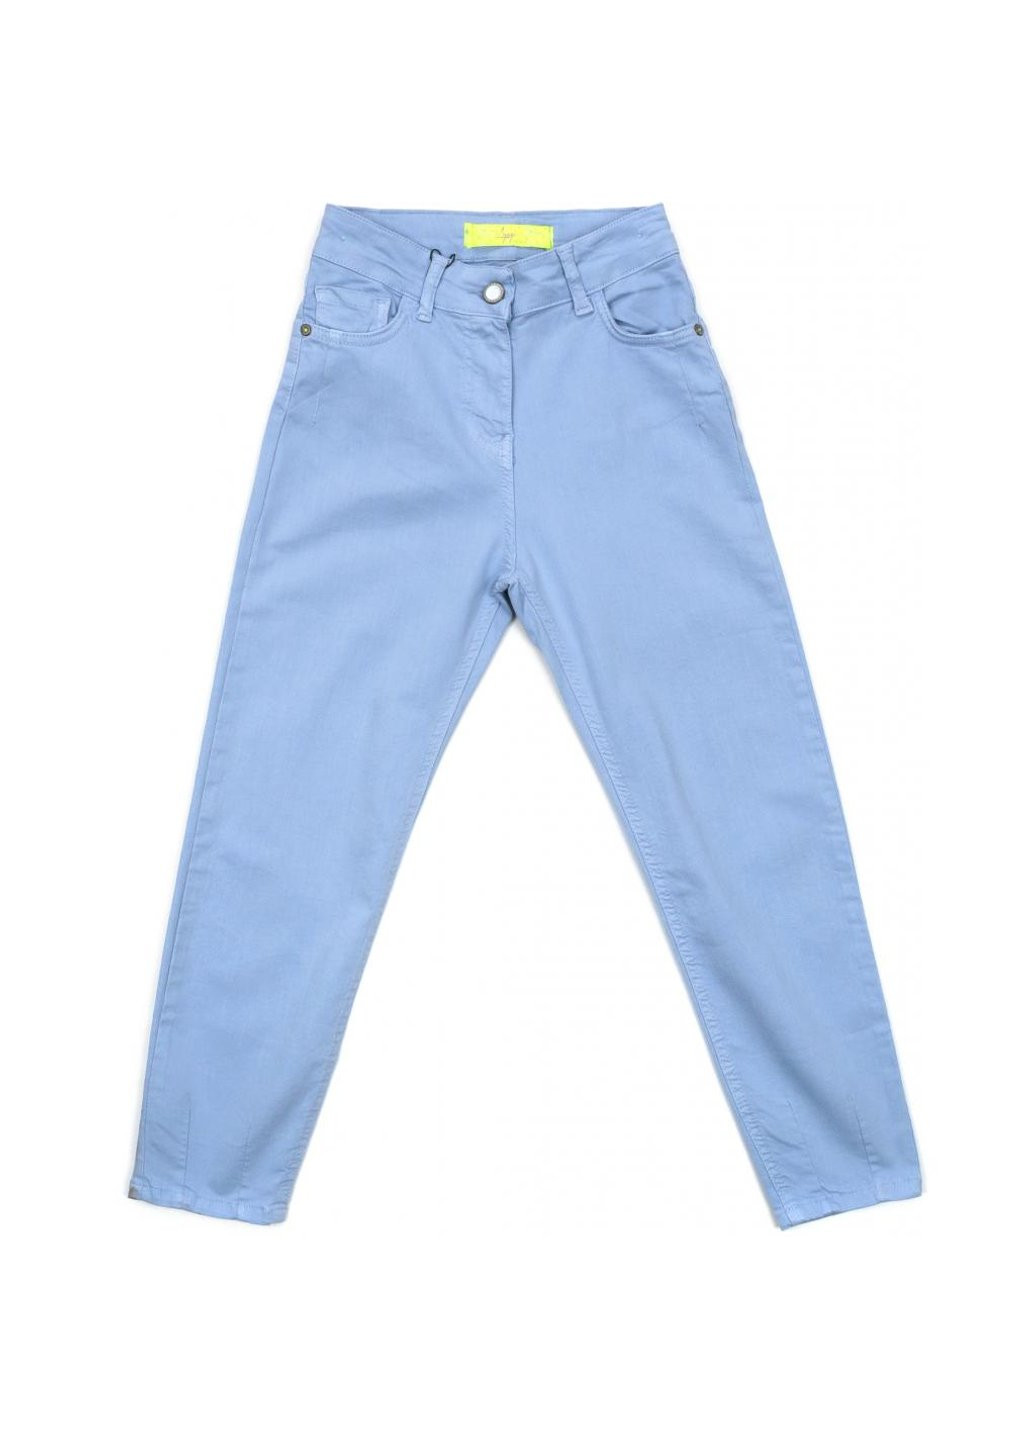 Голубые демисезонные джинсы с высокой талией (9255-146g-blue) A-yugi